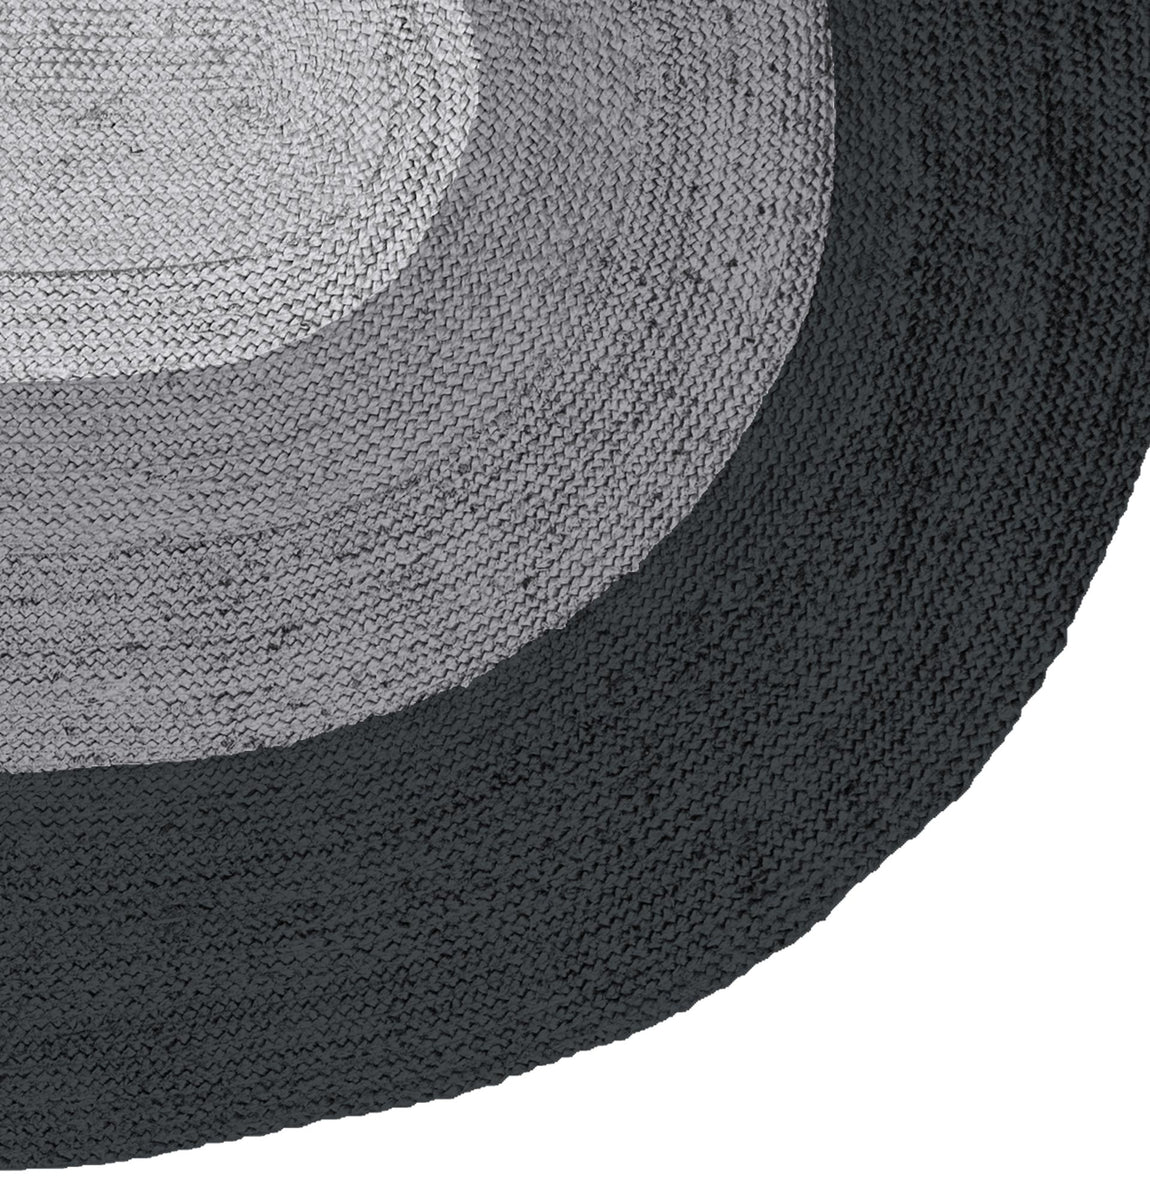 Teppich BORDER 170x300 cm oval aus Jute schwarz/grau – ALLES GOLD WAS GLÄNZT